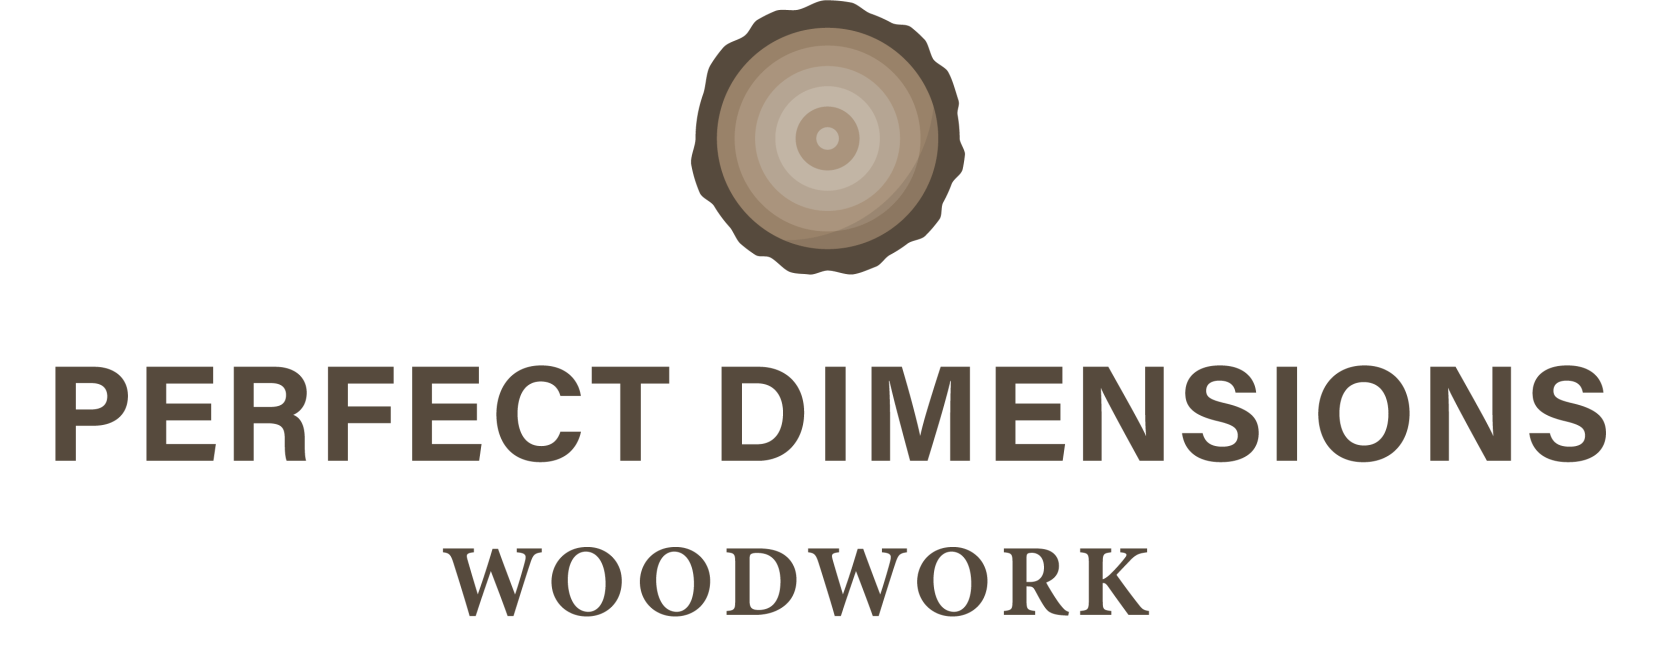 custom millwork prefect dimensions logo